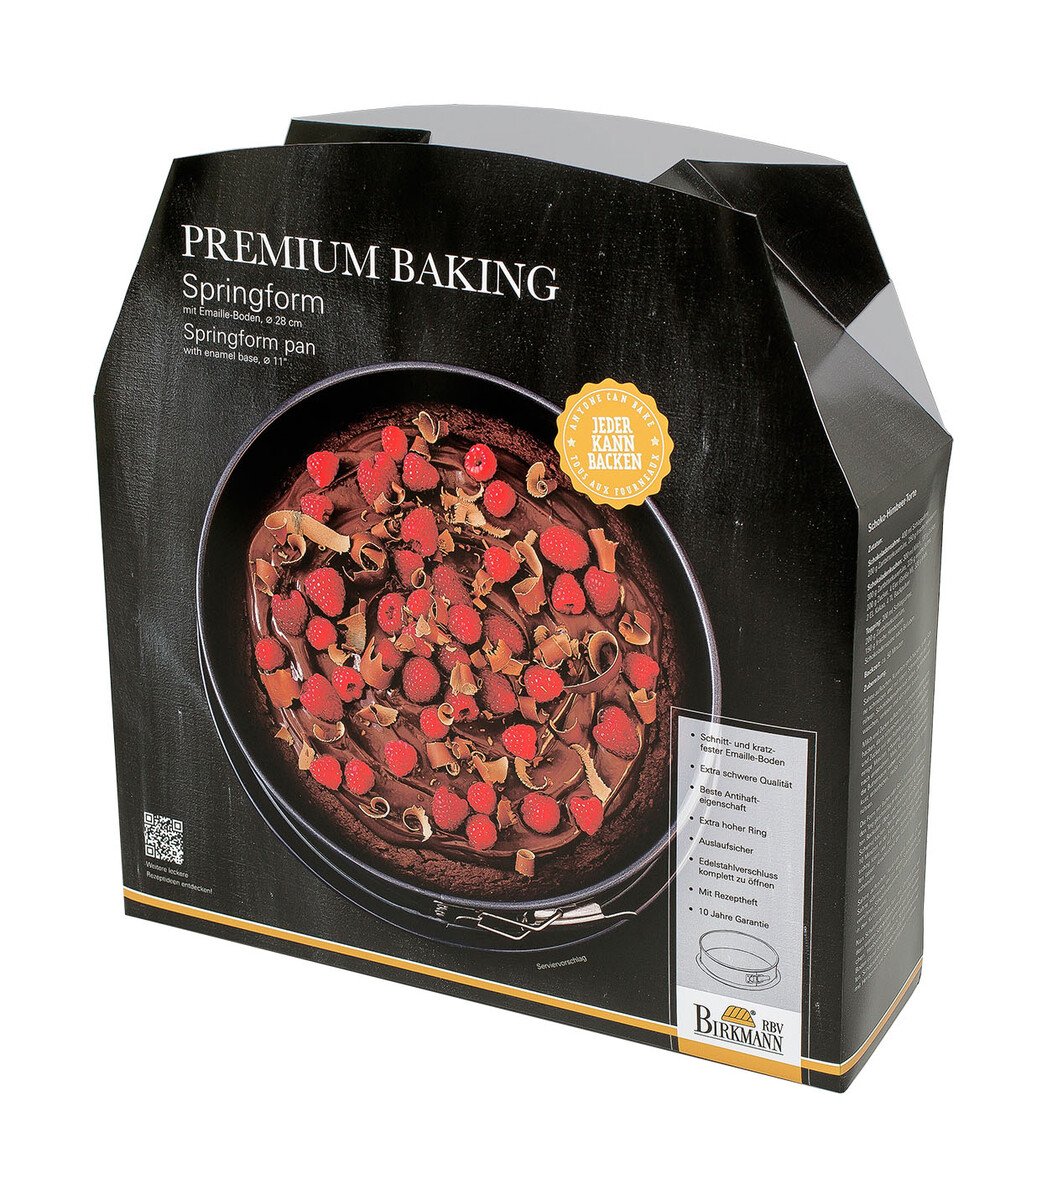 RBV Birkmann Springform 28 cm Premium Baking schwarz von RBV Birkmann